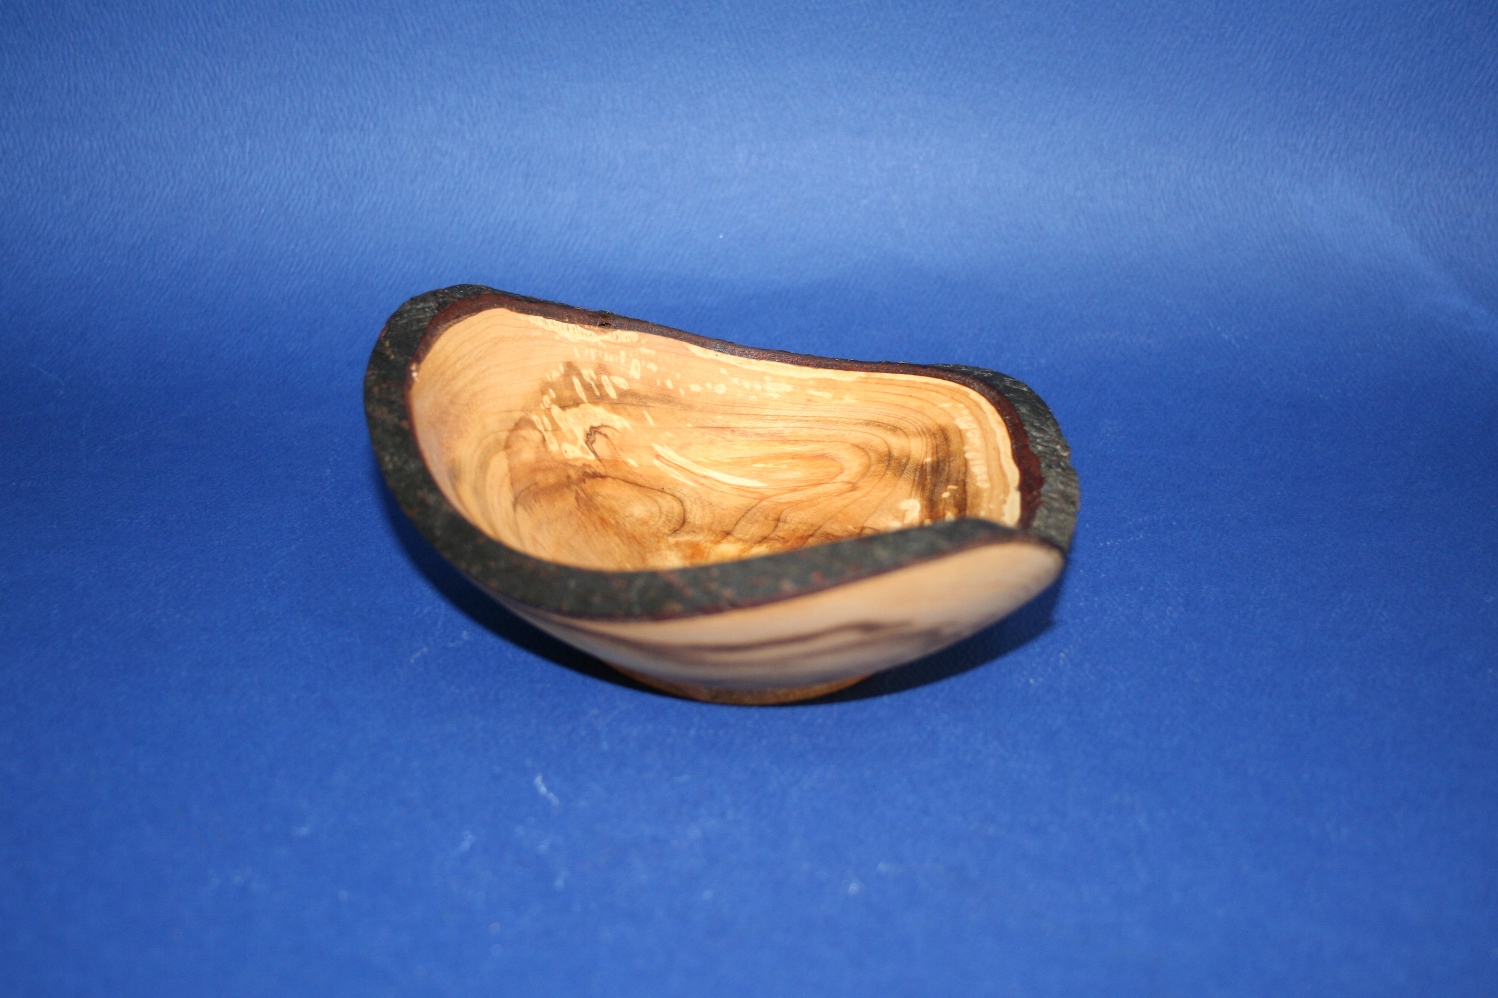 Miska drevená – s kôrou